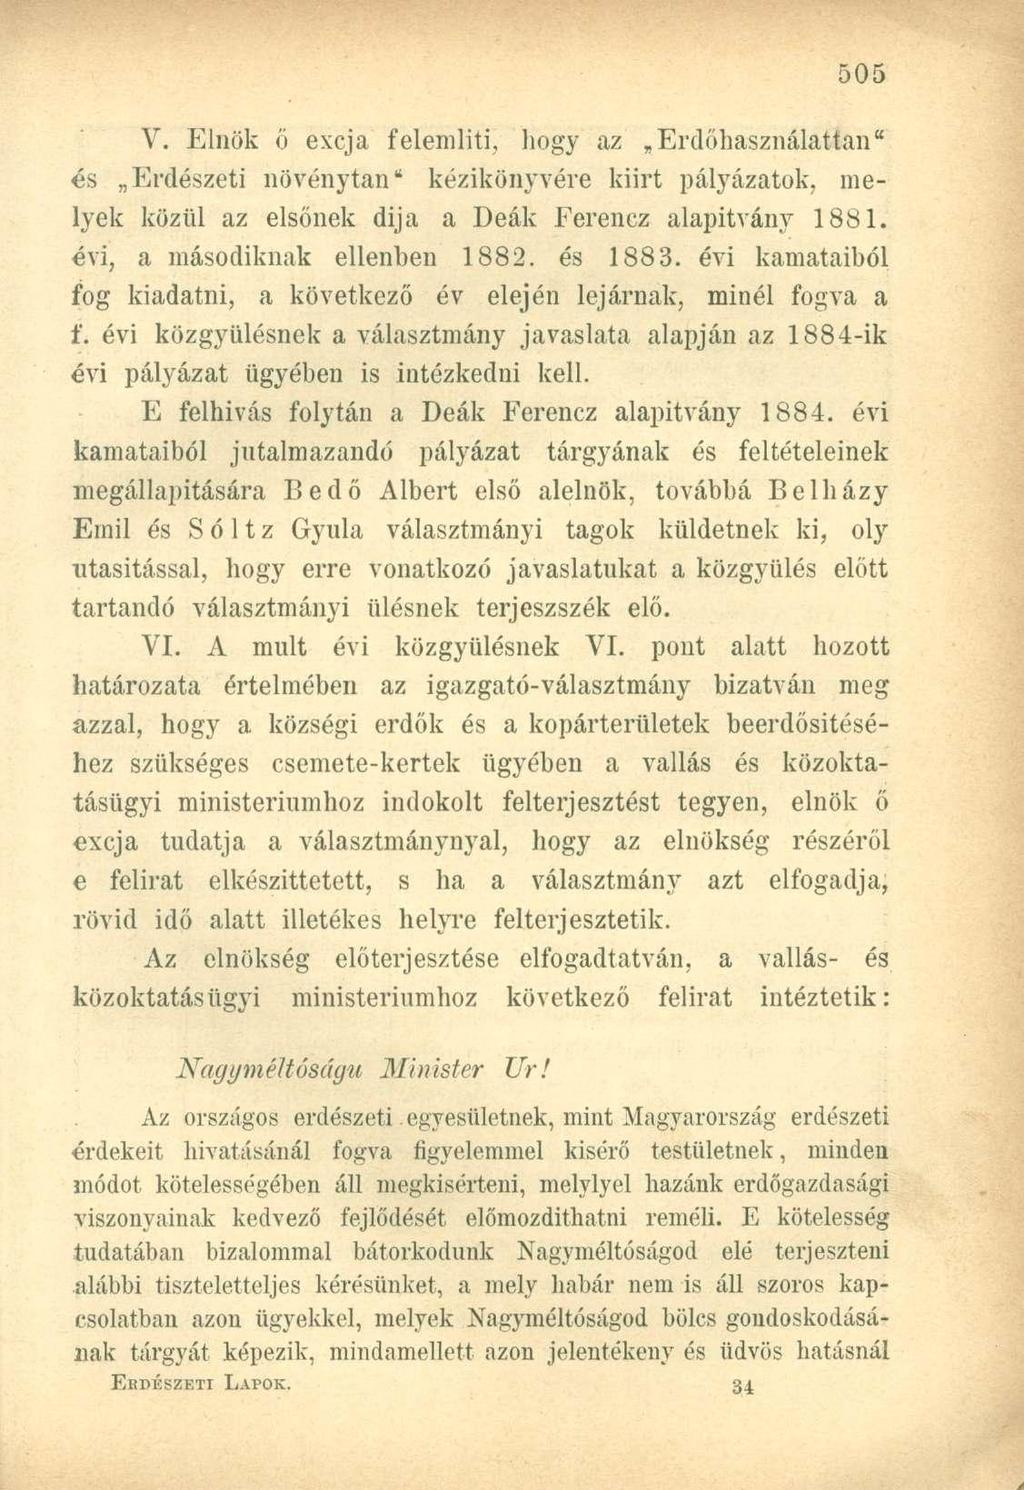 V. Elnök ö excja felemlíti, hogy az Erdőhasználattan" és Erdészeti növénytan" kézikönyvére kiirt pályázatok, melyek közül az elsőnek dija a Deák Ferencz alapítvány 1881.